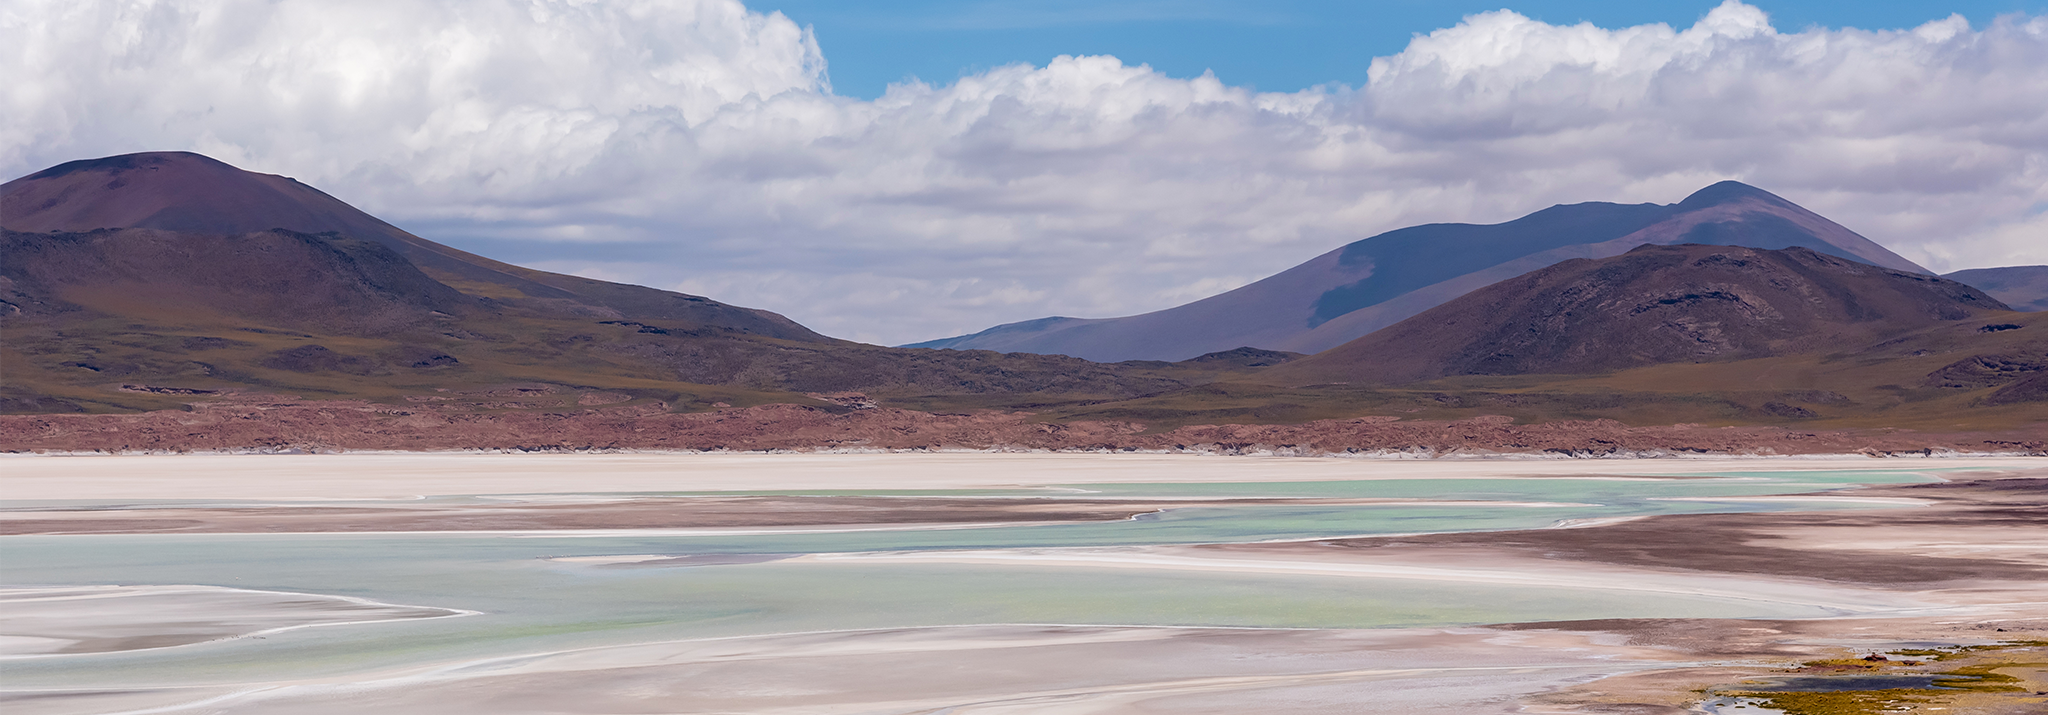 vallée-itata-chili-paysage-montage-désert-couleur